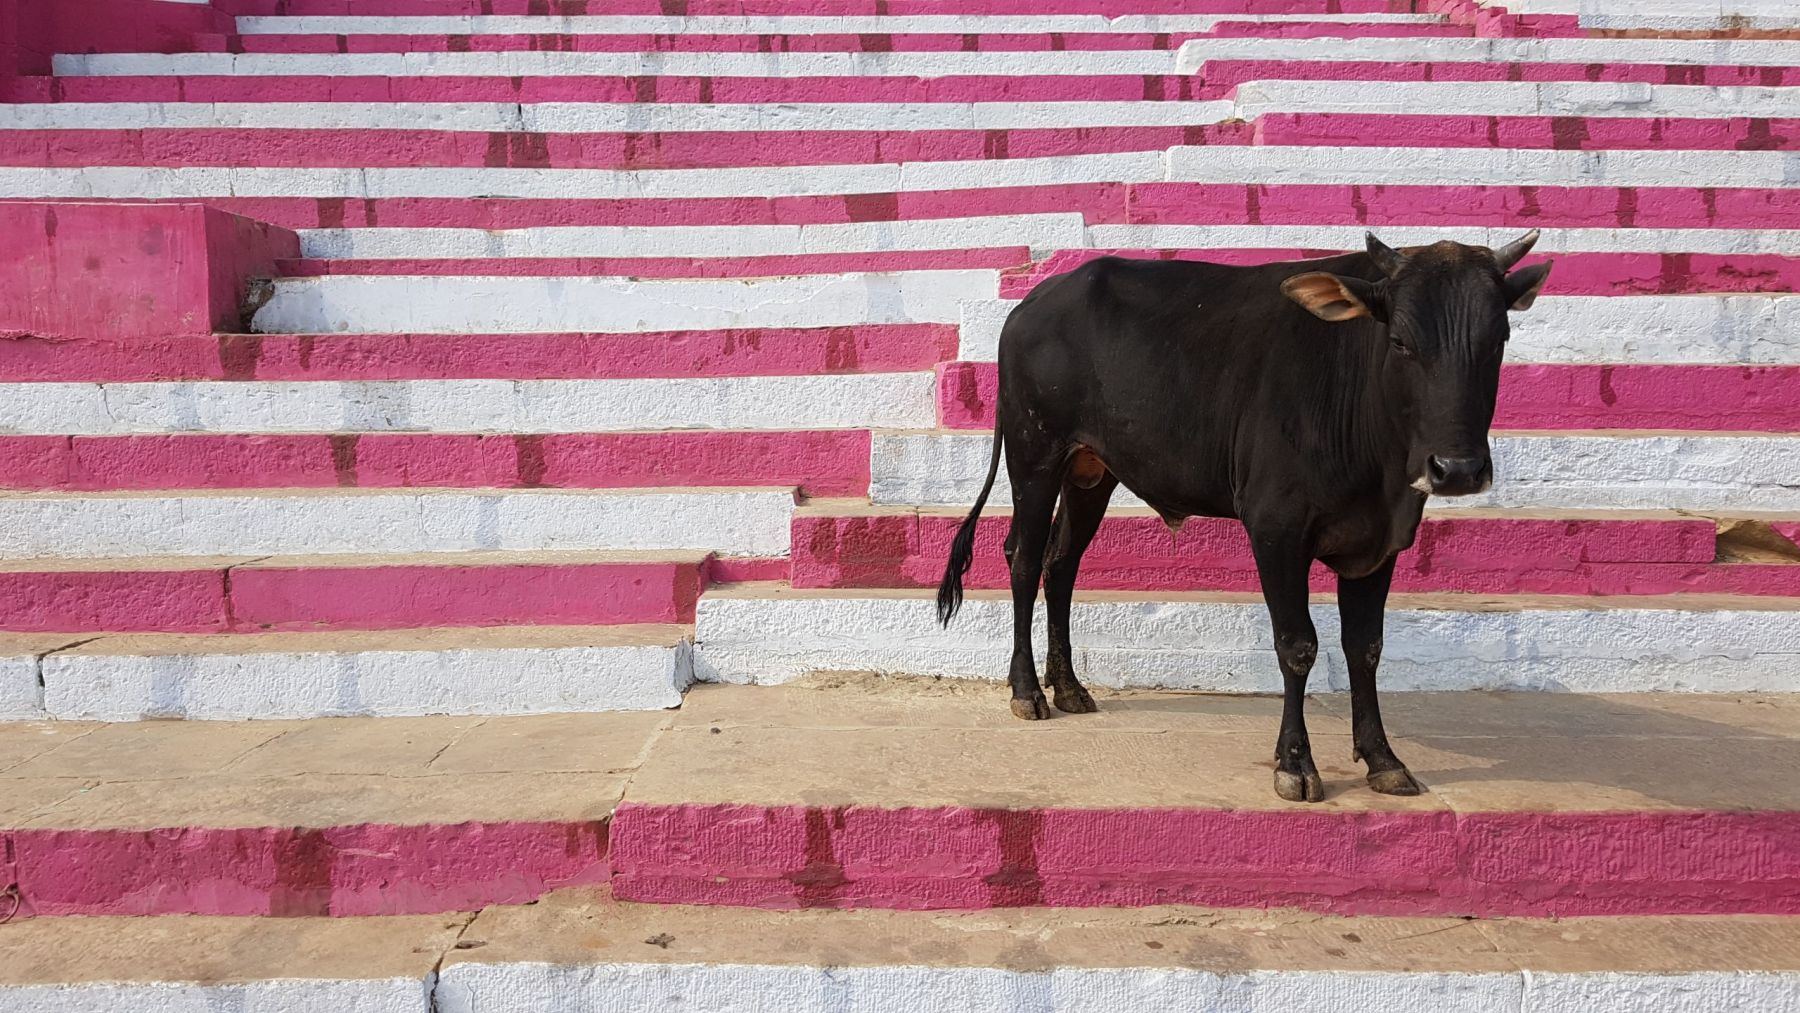 Ινδία  κορονοϊός – κοπριά: Προστατεύονται από την πανδημία με περιττώματα από αγελάδες